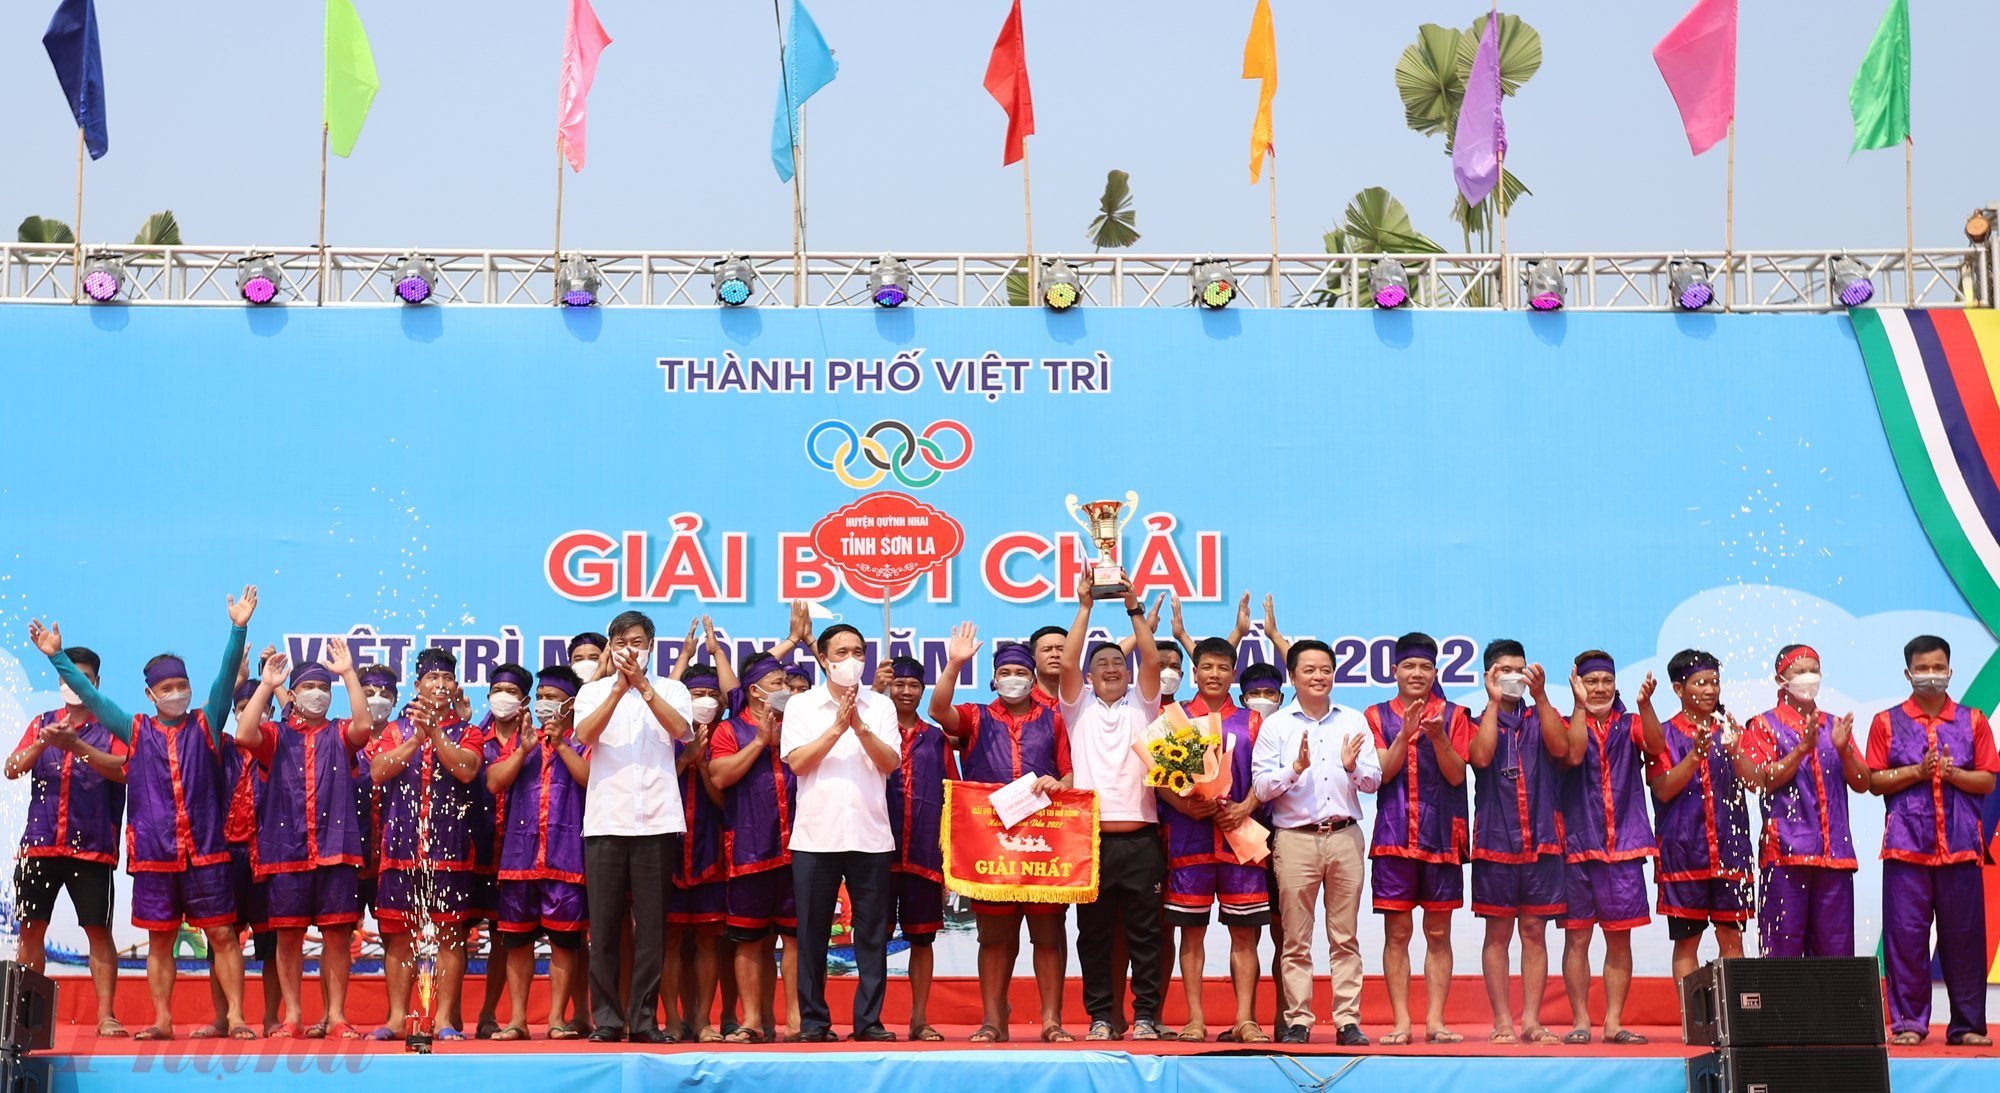 Kết quả, giải nhất thuộc về đội đến từ tỉnh Sơn La; giải nhì và giải ba thuộc về các đội của Phú Thọ.